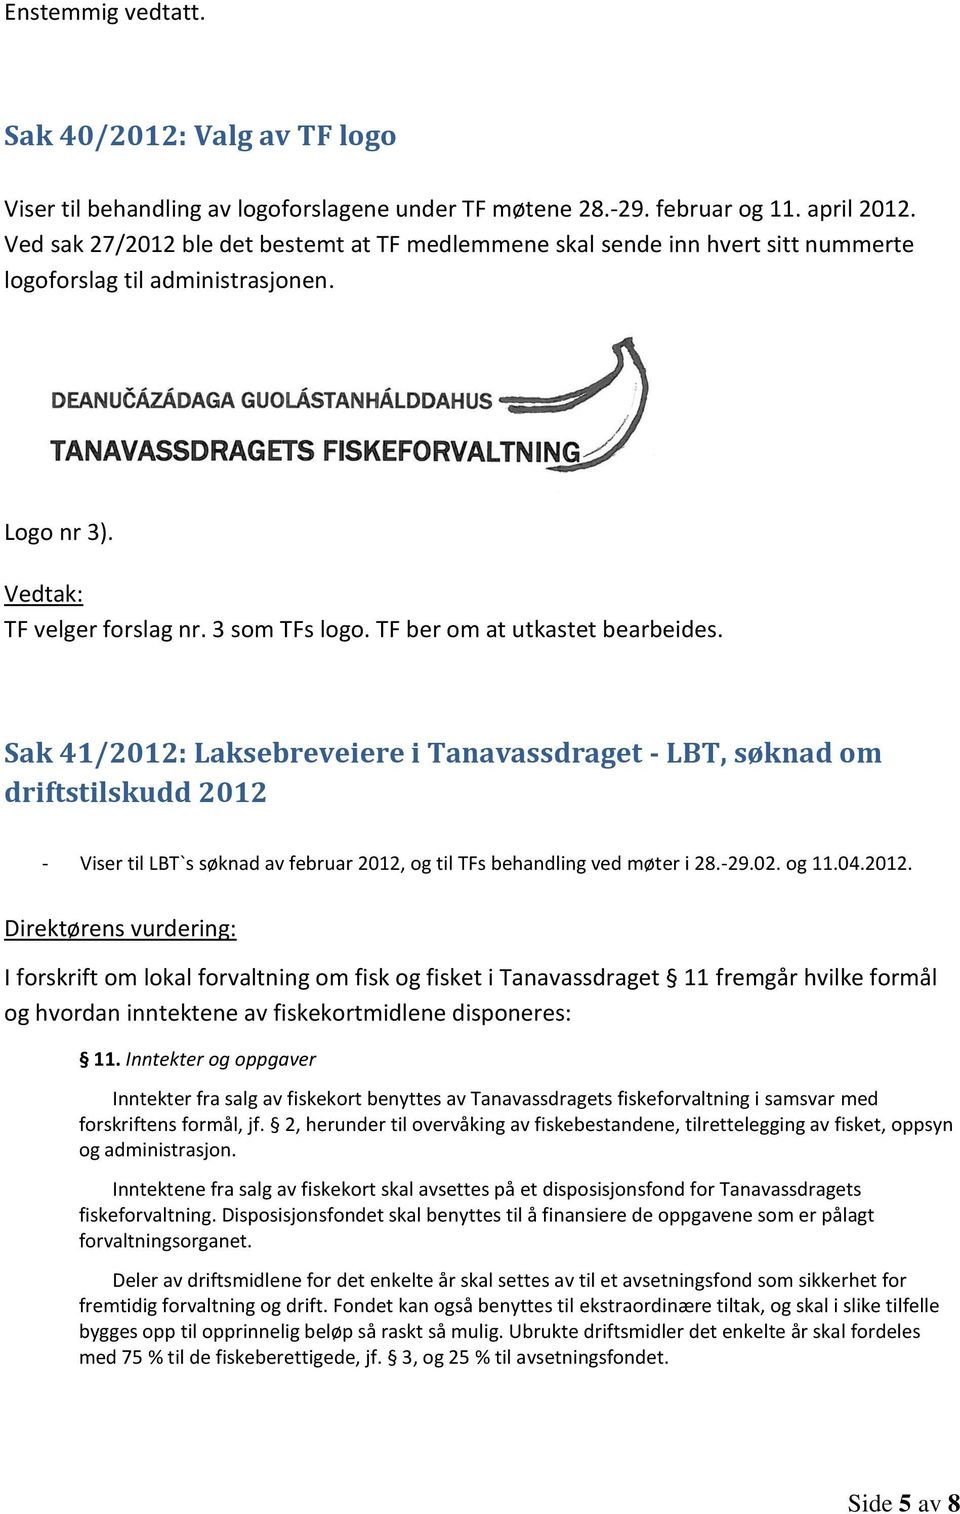 TF ber om at utkastet bearbeides. Sak 41/2012: Laksebreveiere i Tanavassdraget - LBT, søknad om driftstilskudd 2012 - Viser til LBT`s søknad av februar 2012, og til TFs behandling ved møter i 28.-29.